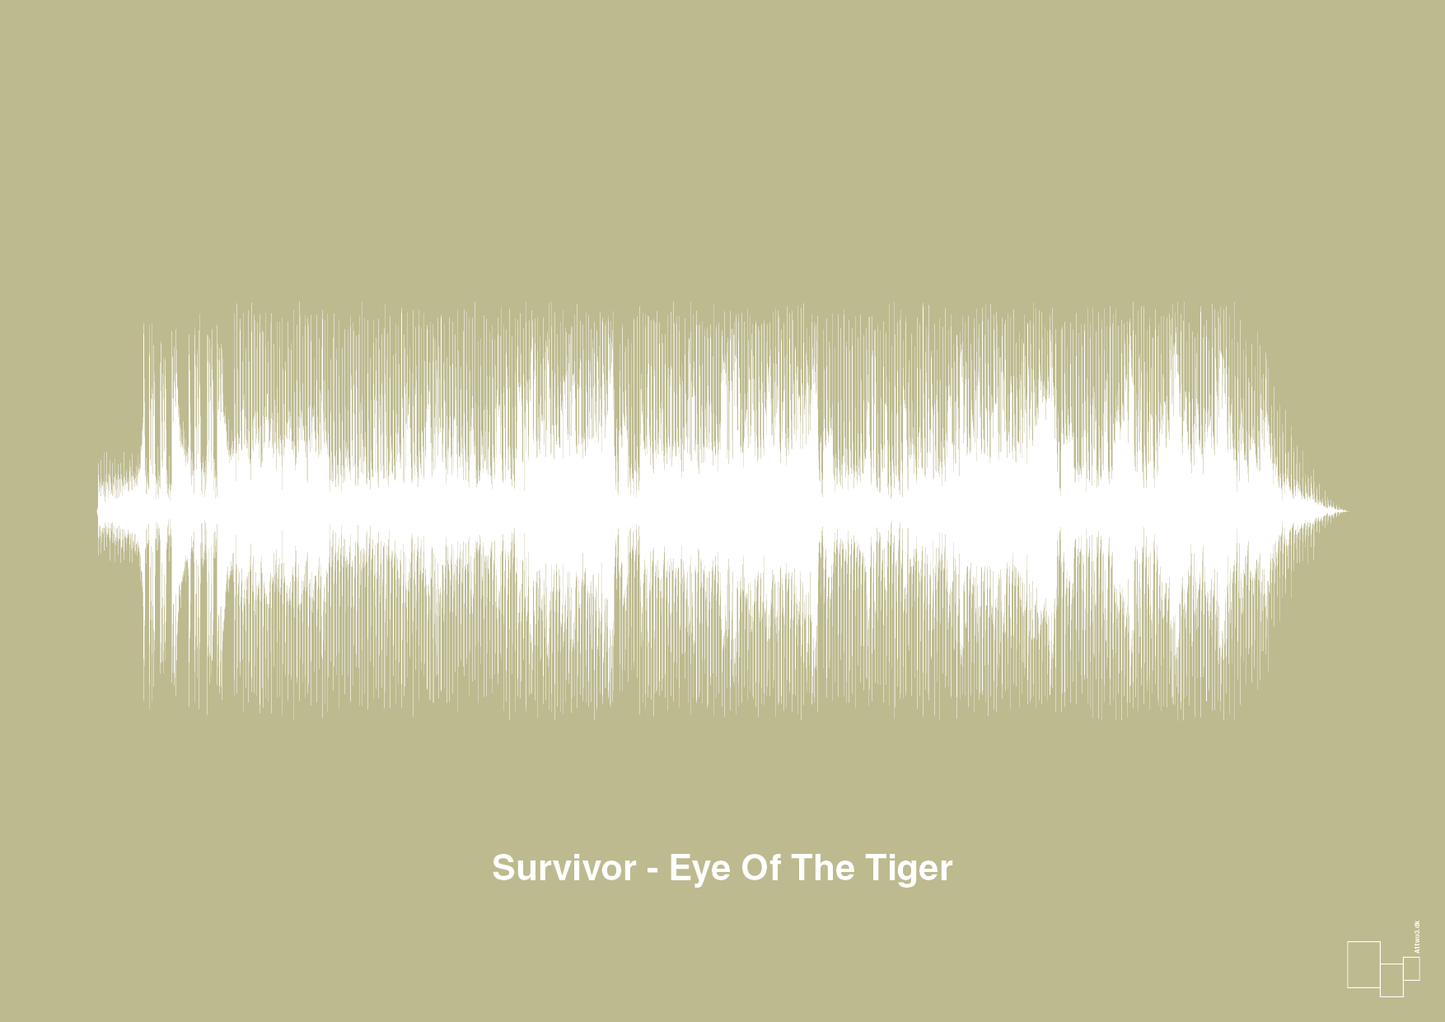 survivor - eye of the tiger - Plakat med Musik i Back to Nature